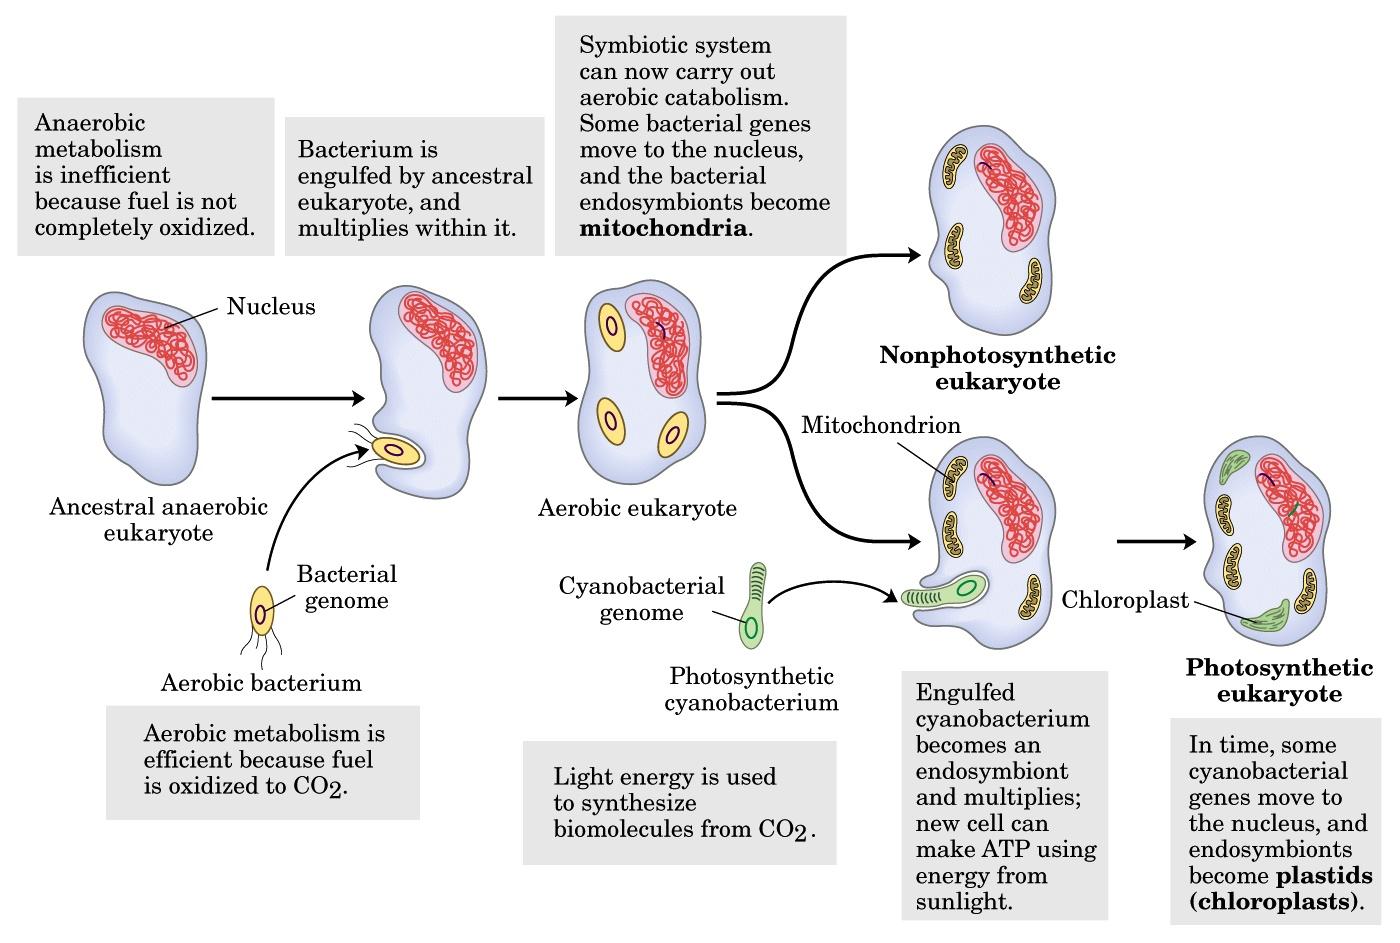 Modelos de organización celular Origen de la célula eucariótica: teoría endosimbionte Algunos genes bacterianos se insertan en el genoma del hospedador Núcleo Eucariota no fotosintético Mitocondria